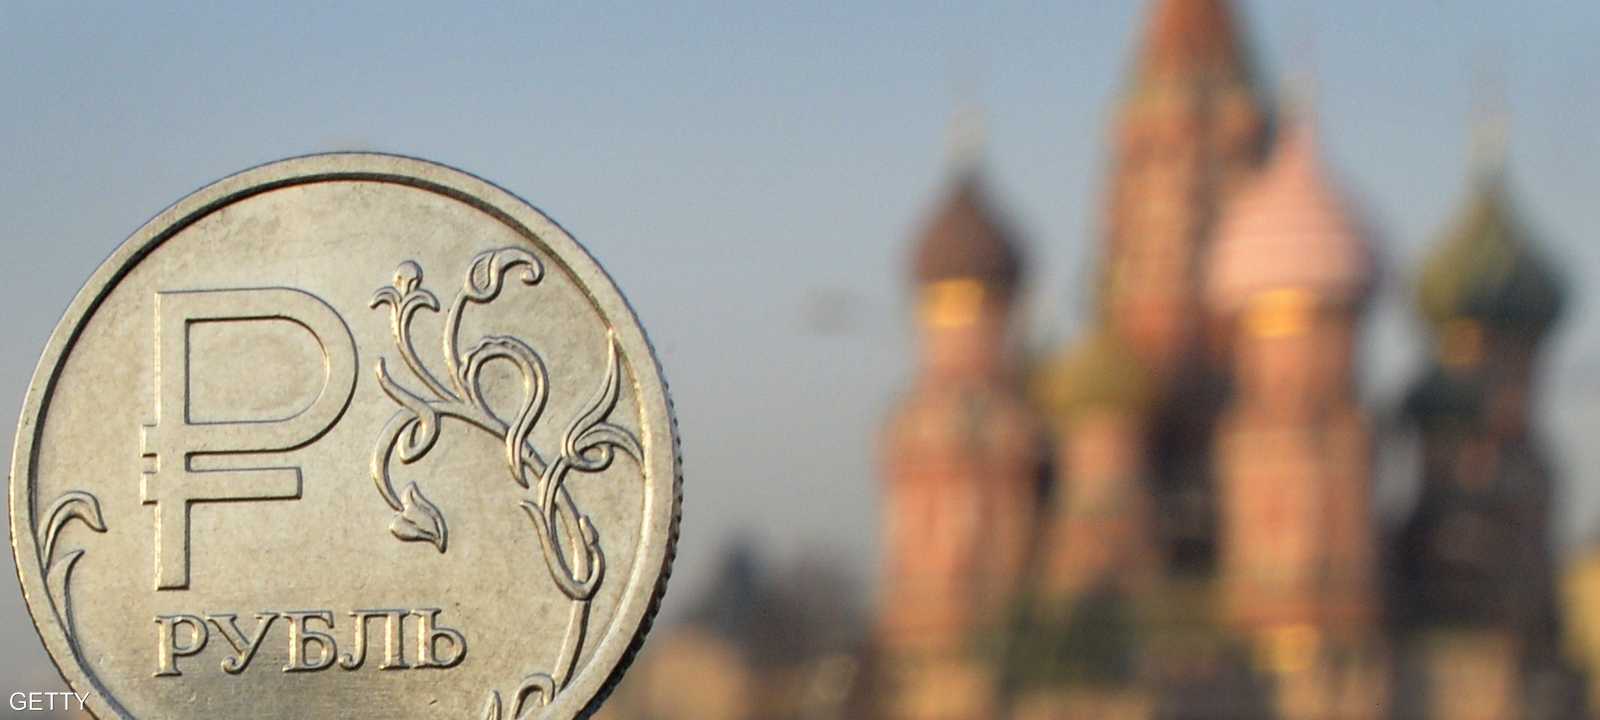 الروبل الروسي يتلقى ضربات ممتالية منذ 2014